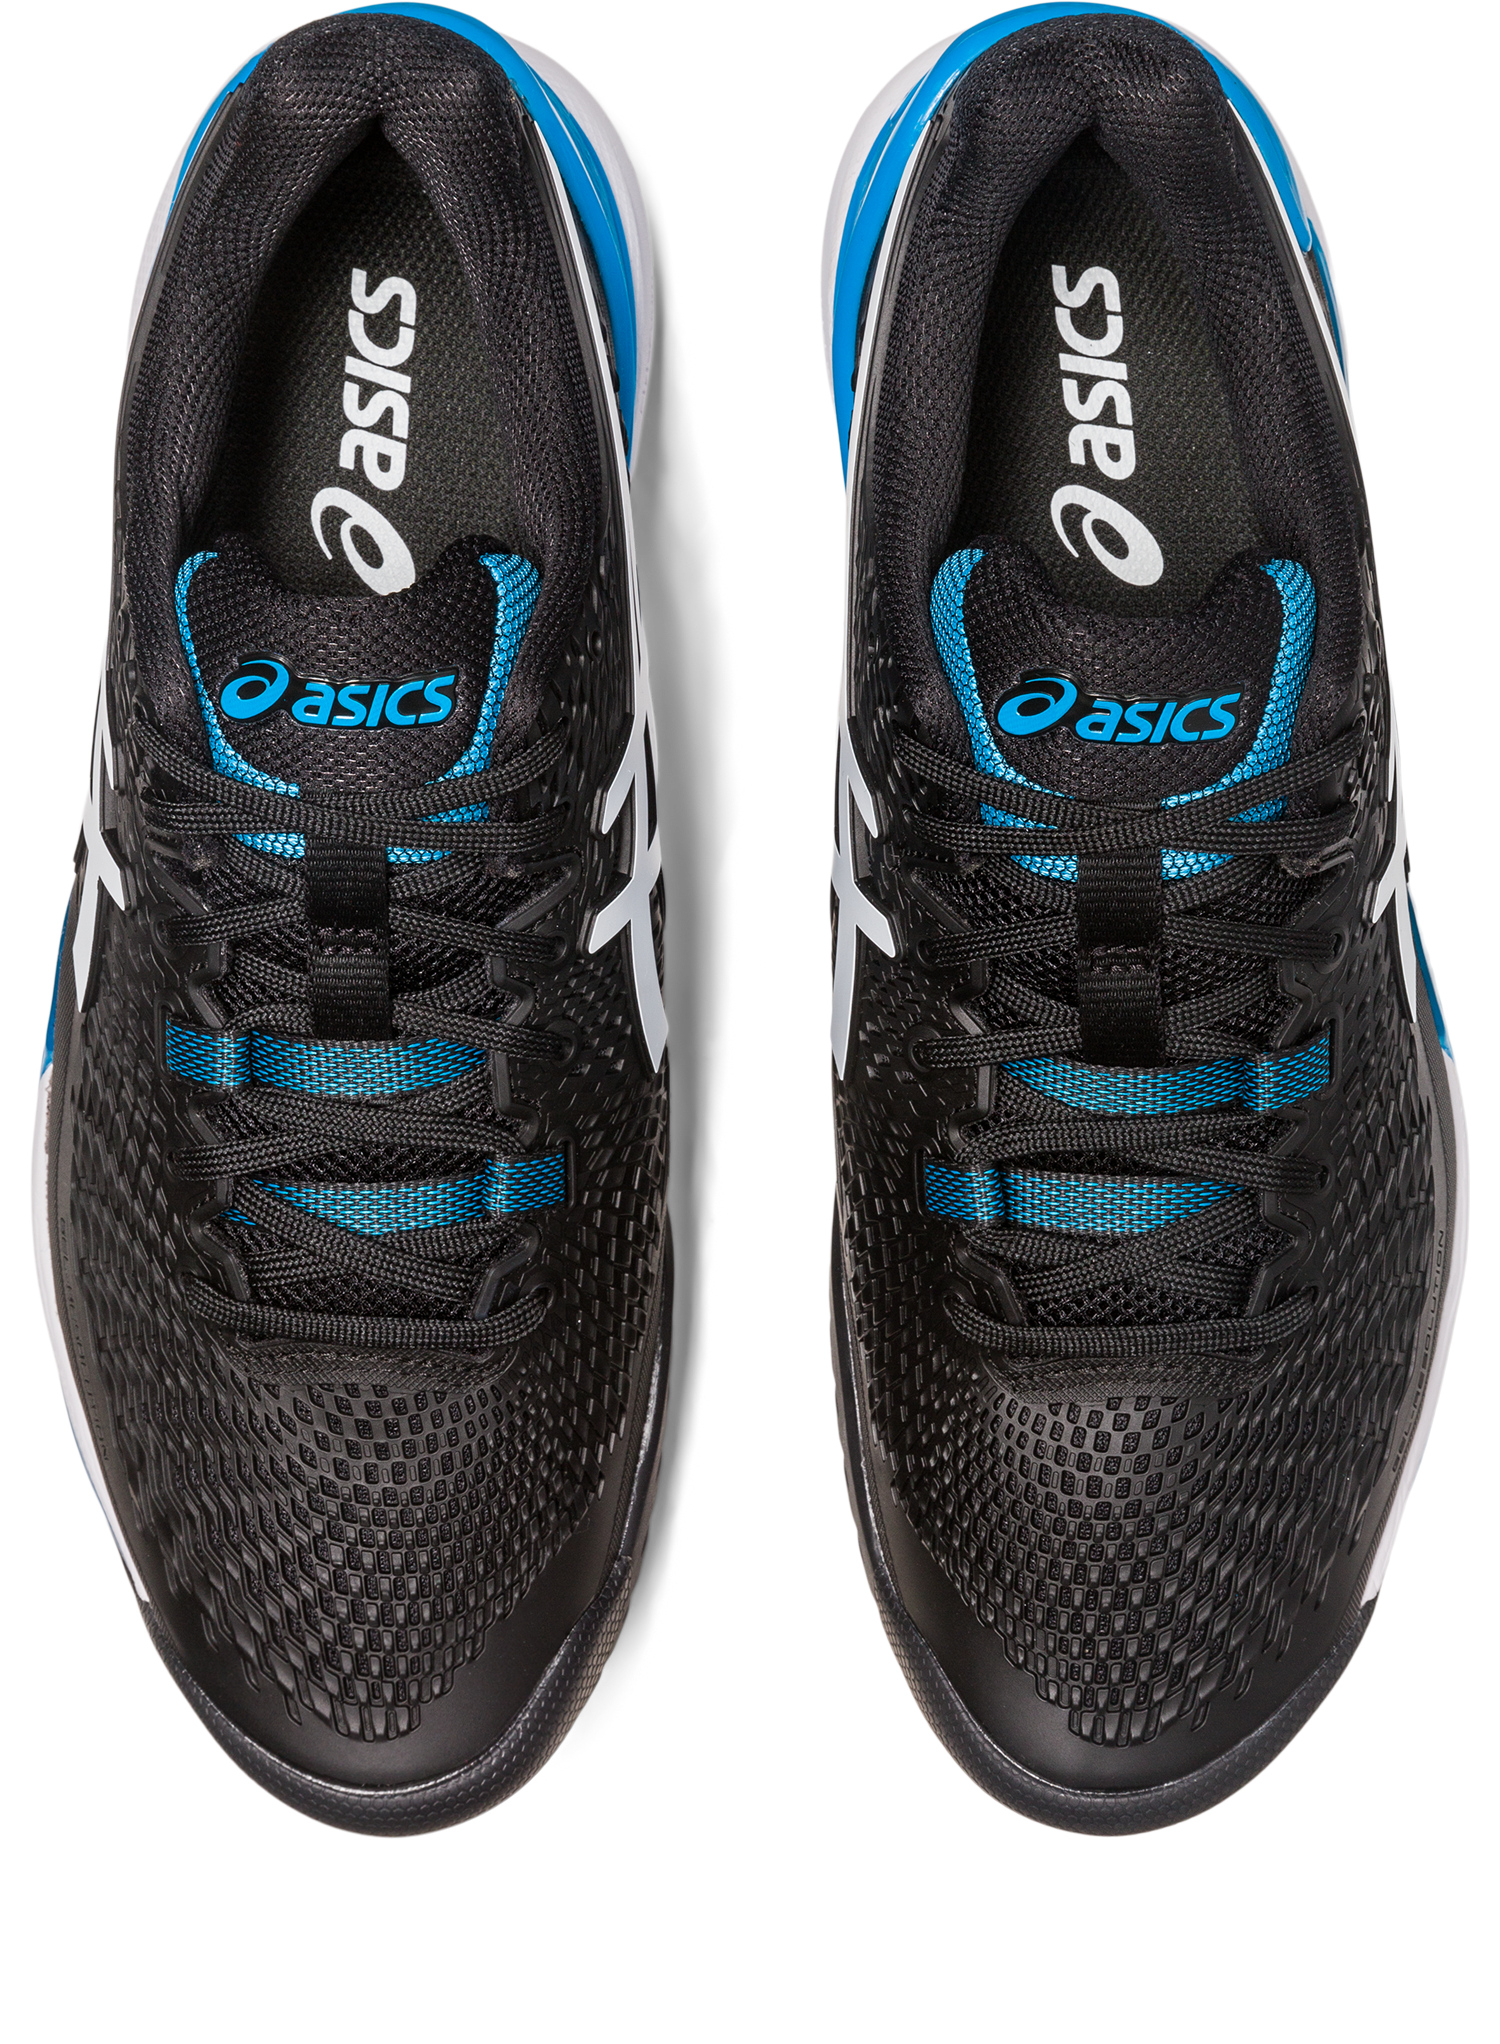 Asics Men's Gel-Resolution 9 Tennis Shoes In Black/White